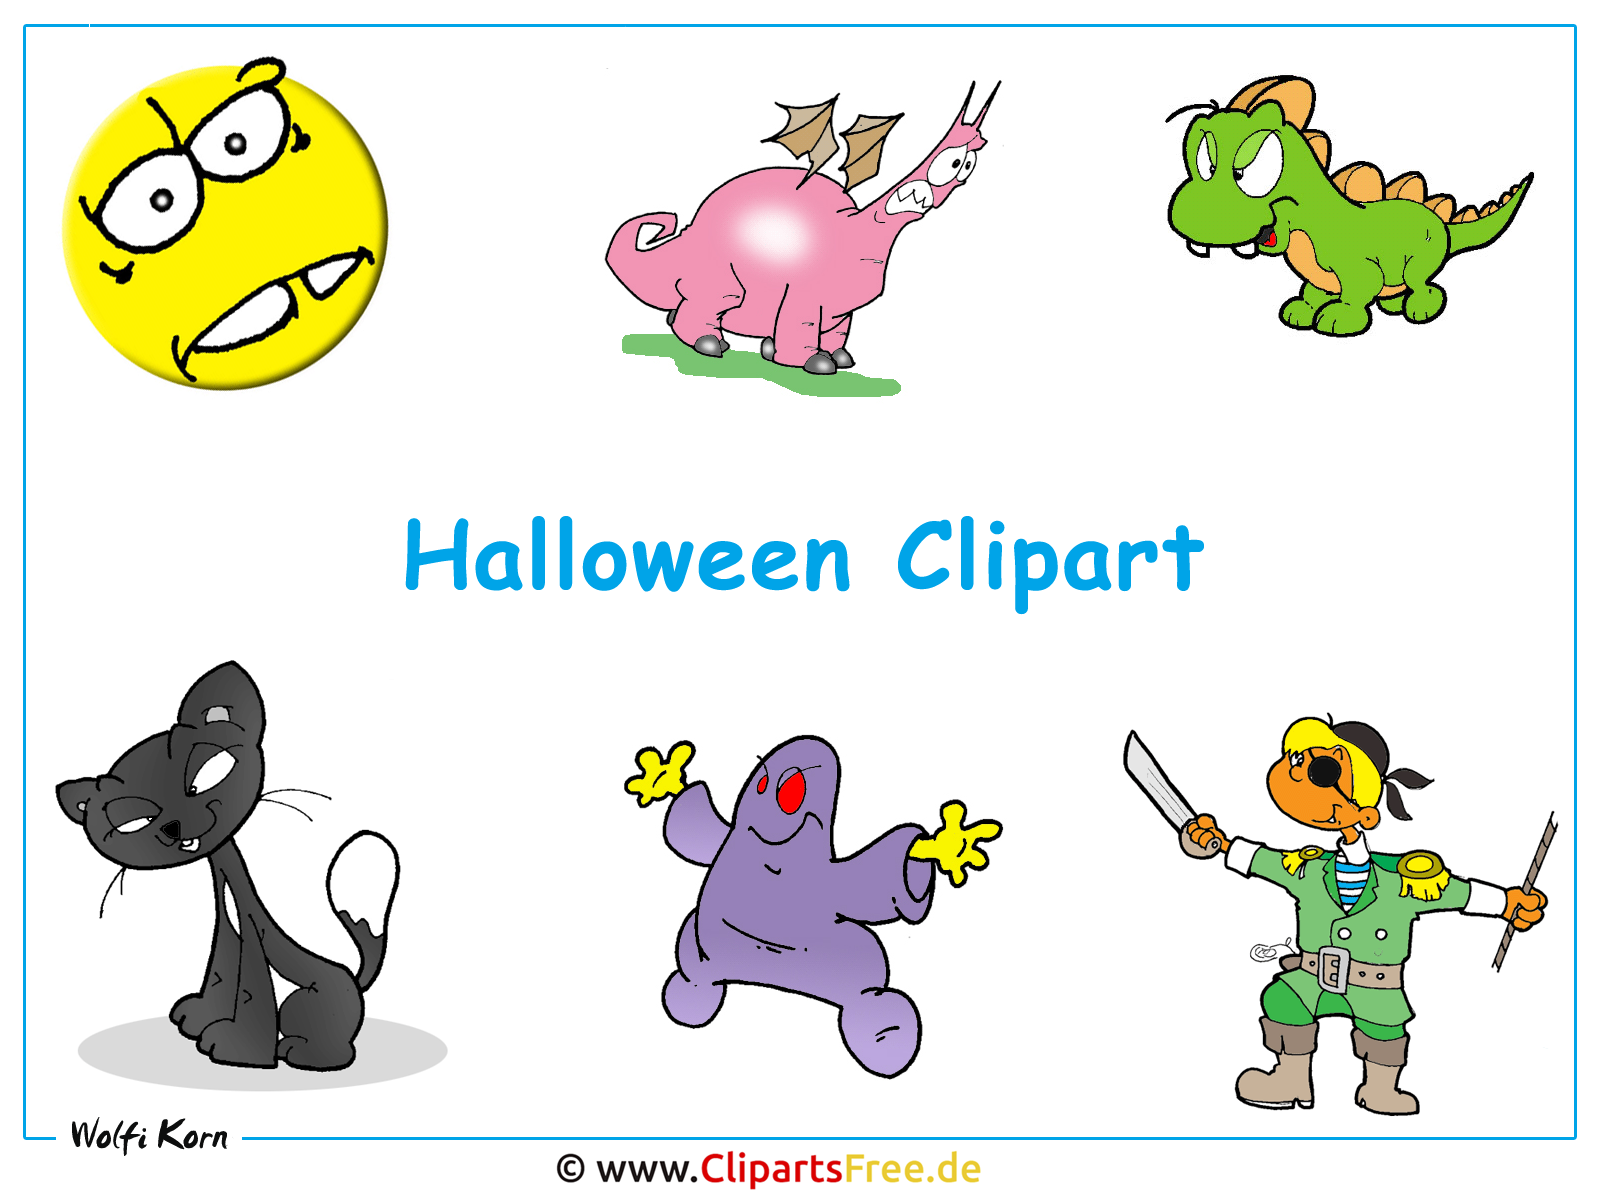 clipart halloween gratis - photo #39